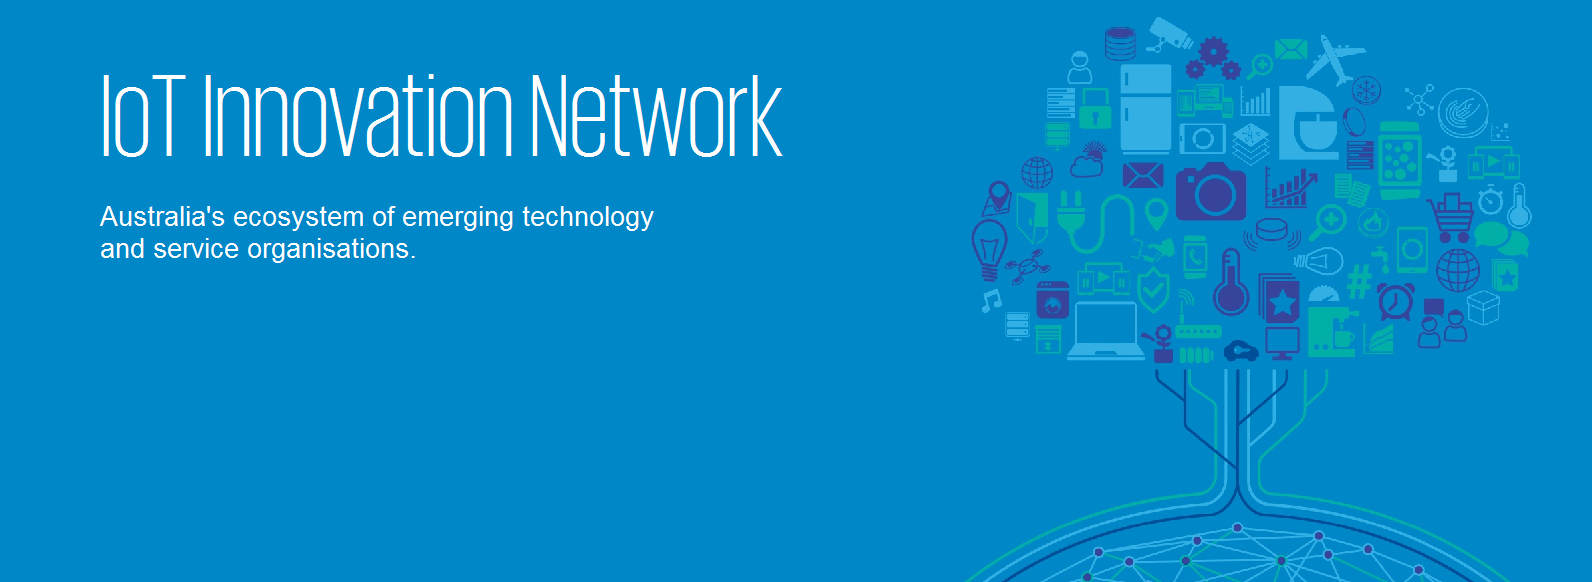 IoT Innovation Network